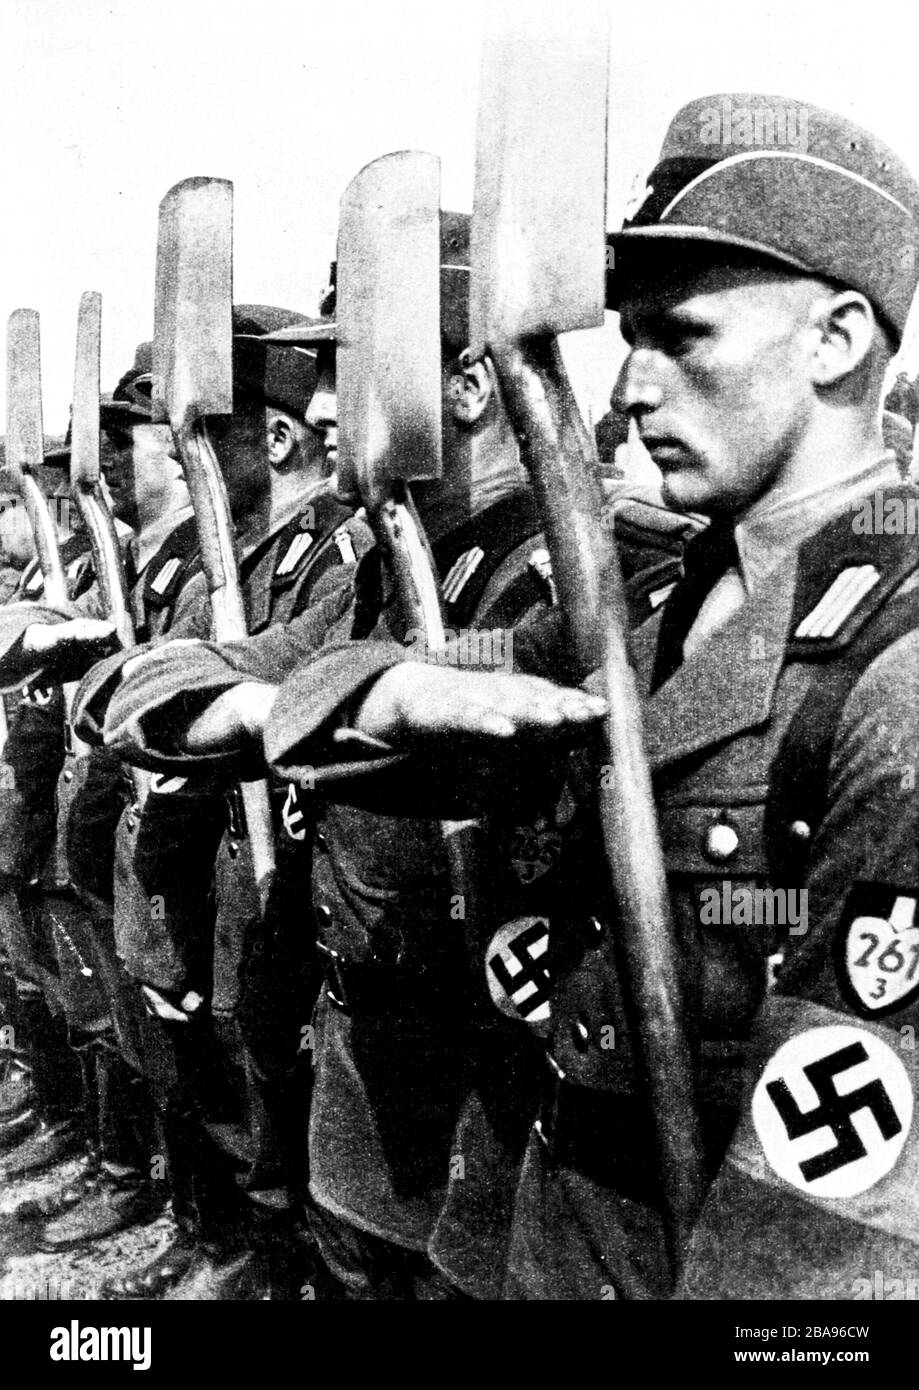 Soldats nazis du Front du travail allemand, 1936 Banque D'Images